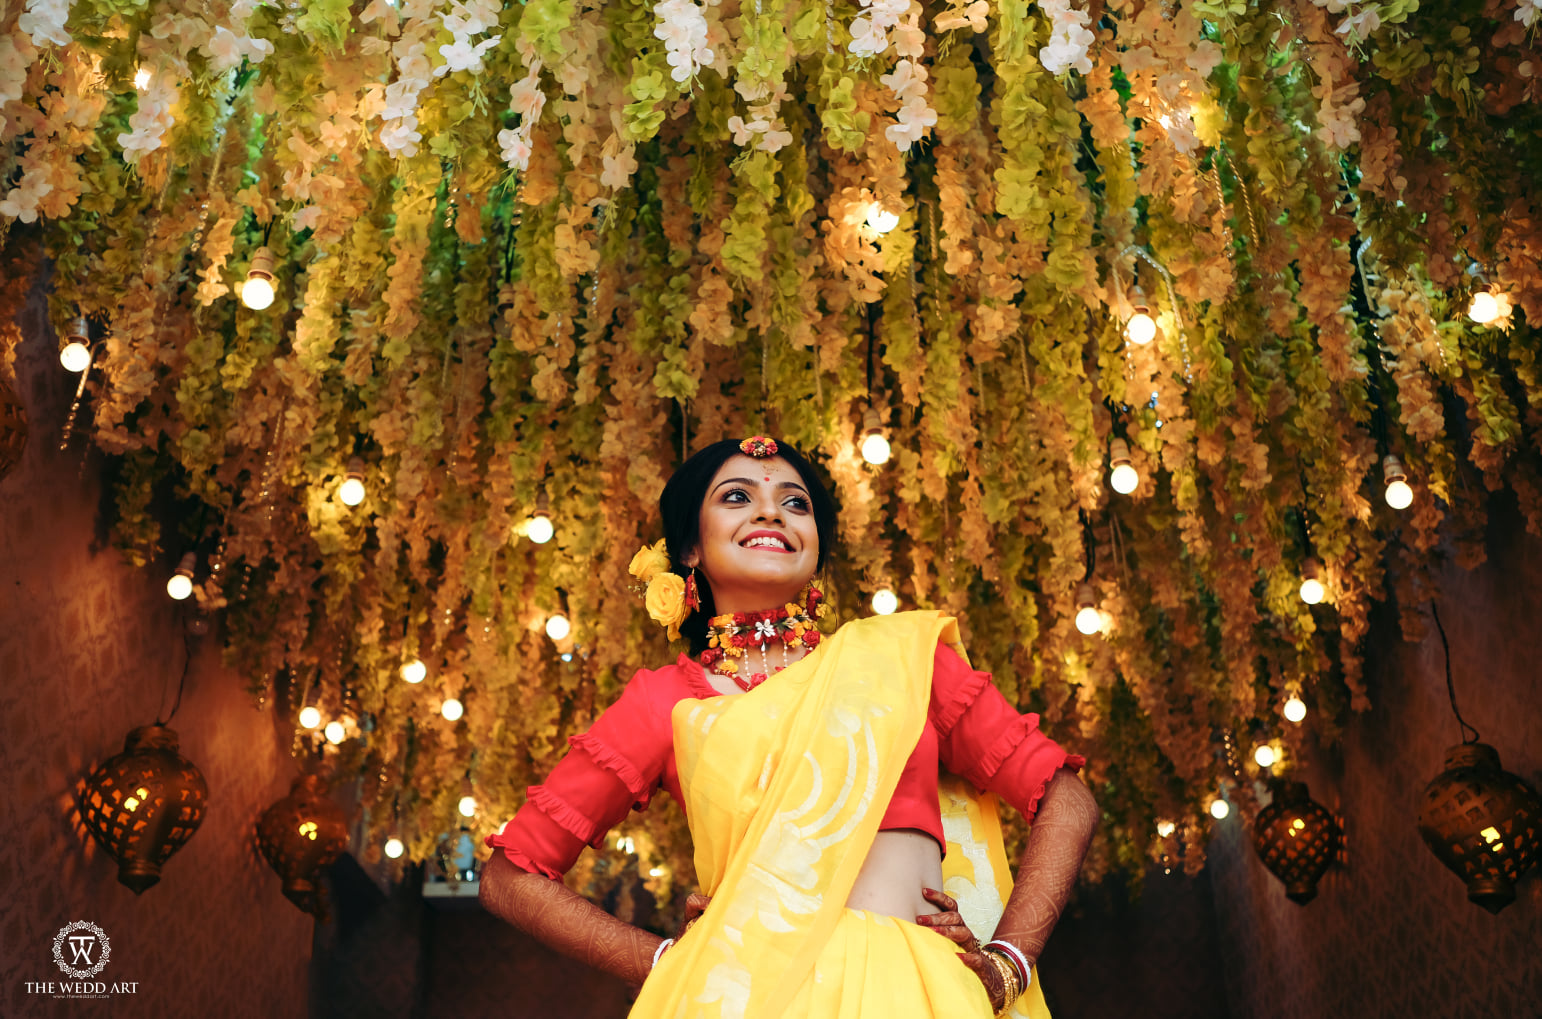 78 Bengali Bride Groom Garland Images, Stock Photos & Vectors | Shutterstock